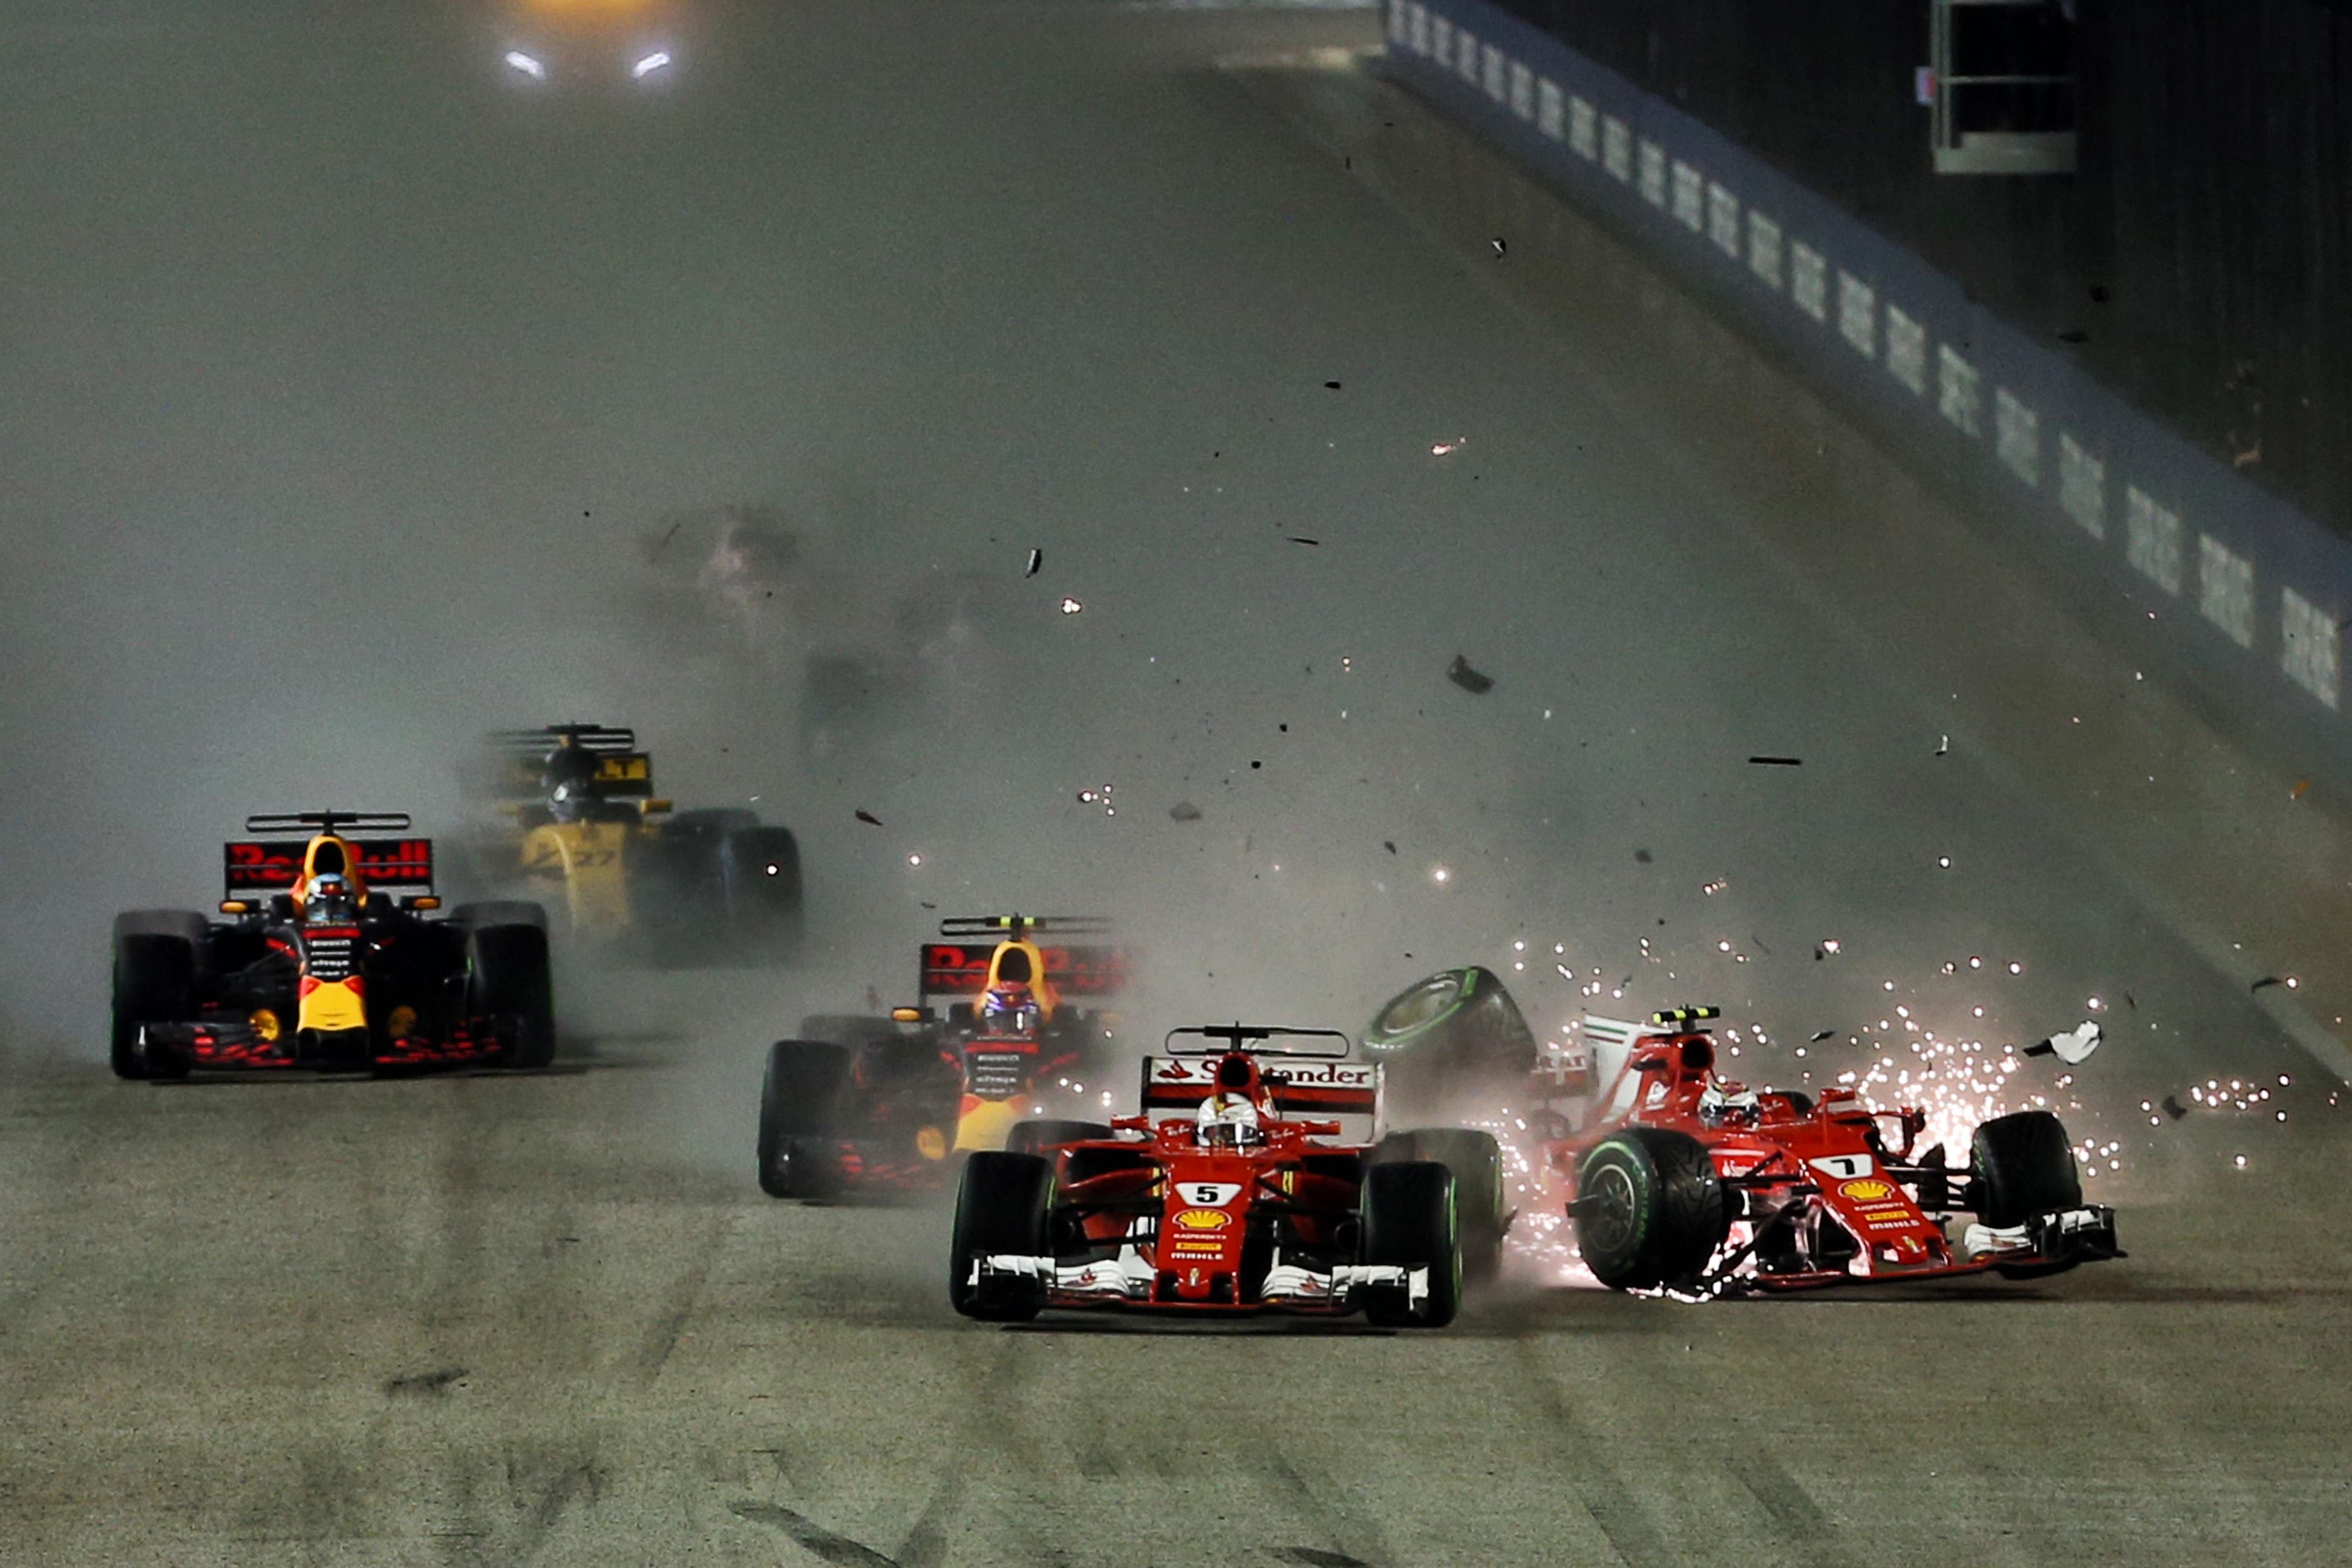 Sebastian Vettel Kimi Raikkonen crash Ferrari Singapore Grand Prix 2017